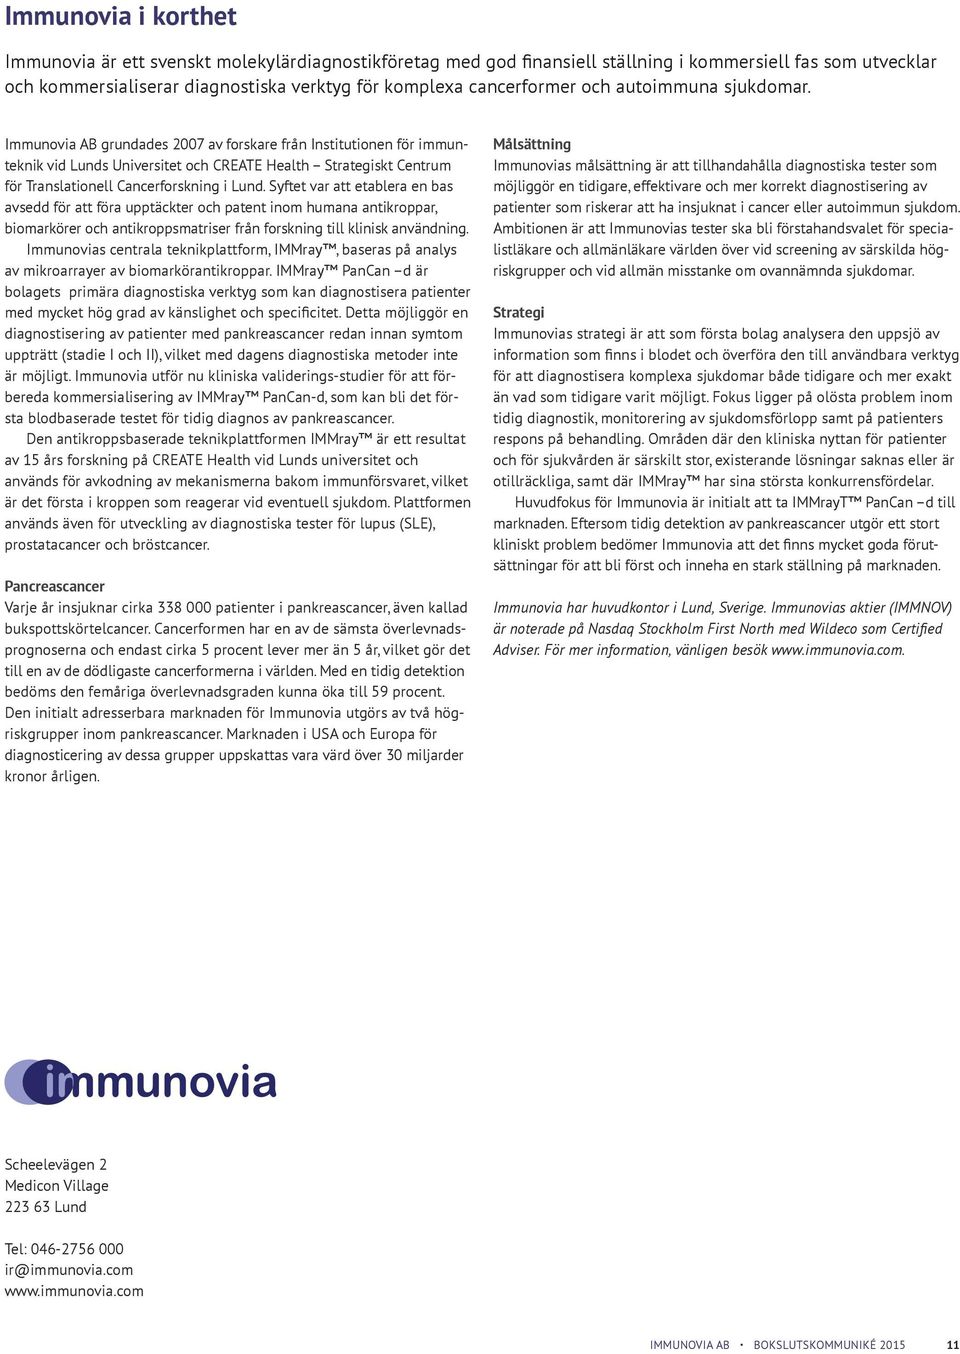 Immunovia AB grundades 2007 av forskare från Institutionen för immunteknik vid Lunds Universitet och CREATE Health Strategiskt Centrum för Translationell Cancerforskning i Lund.